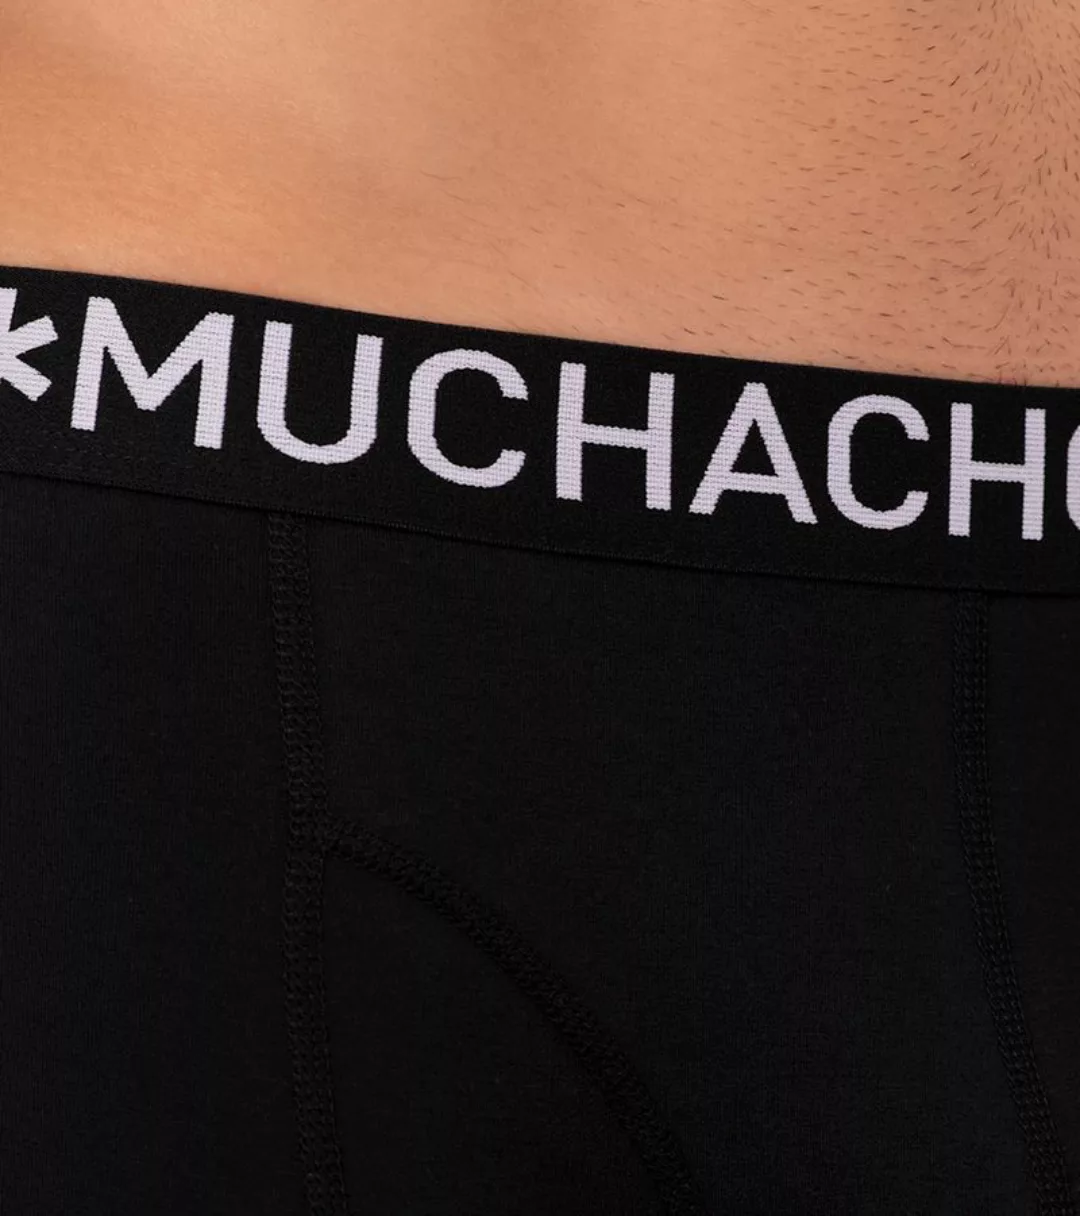 Muchachomalo Boxershorts Hello Sunshine 5-Pack Blau - Größe M günstig online kaufen